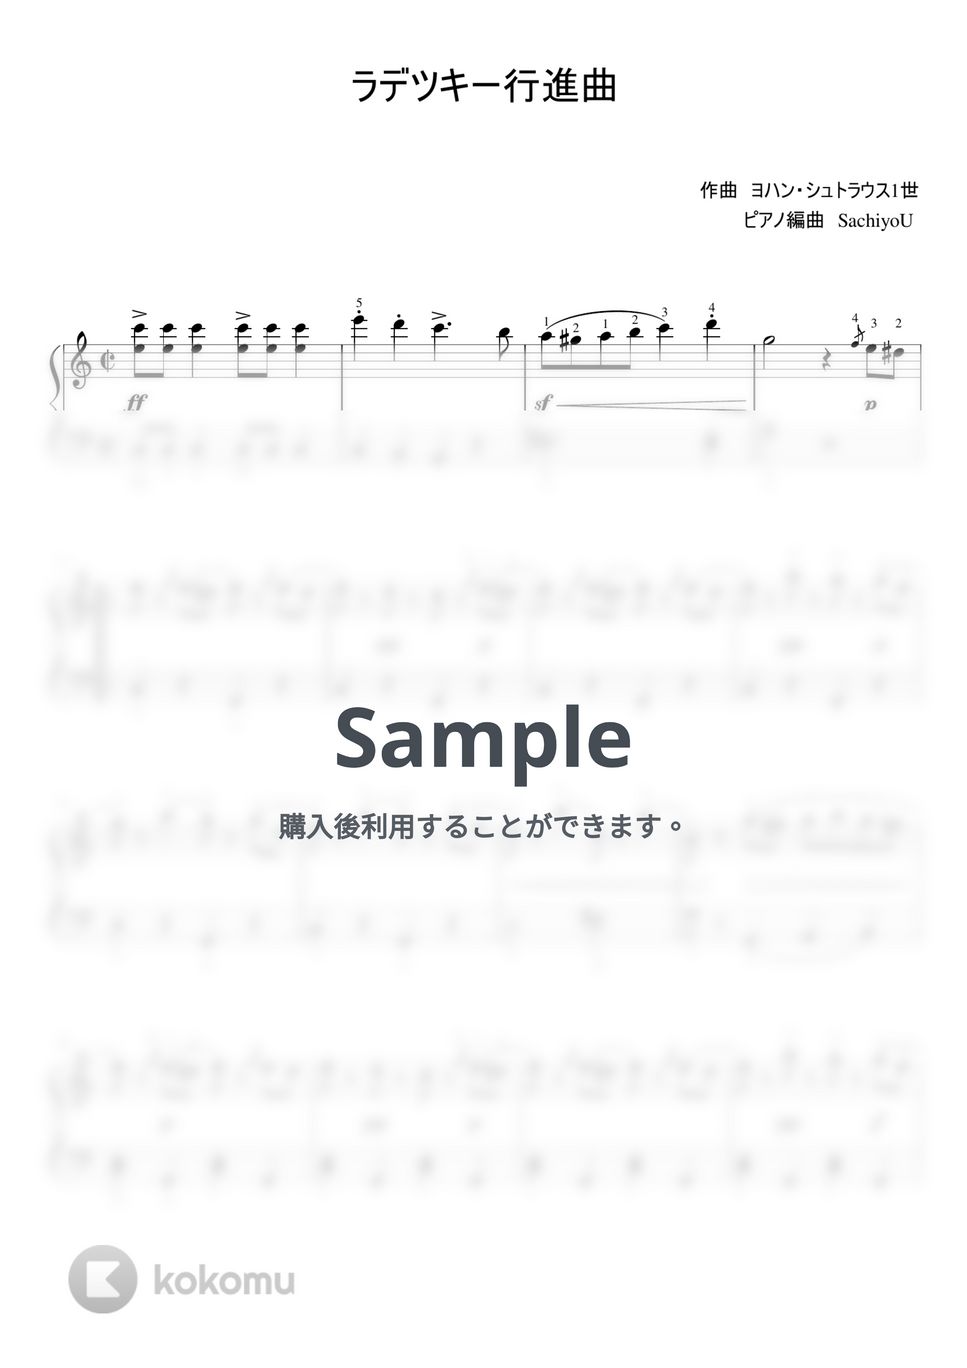 ヨハンシュトラウス1世 - ラデツキー行進曲 (ピアノ) by SachiyoU